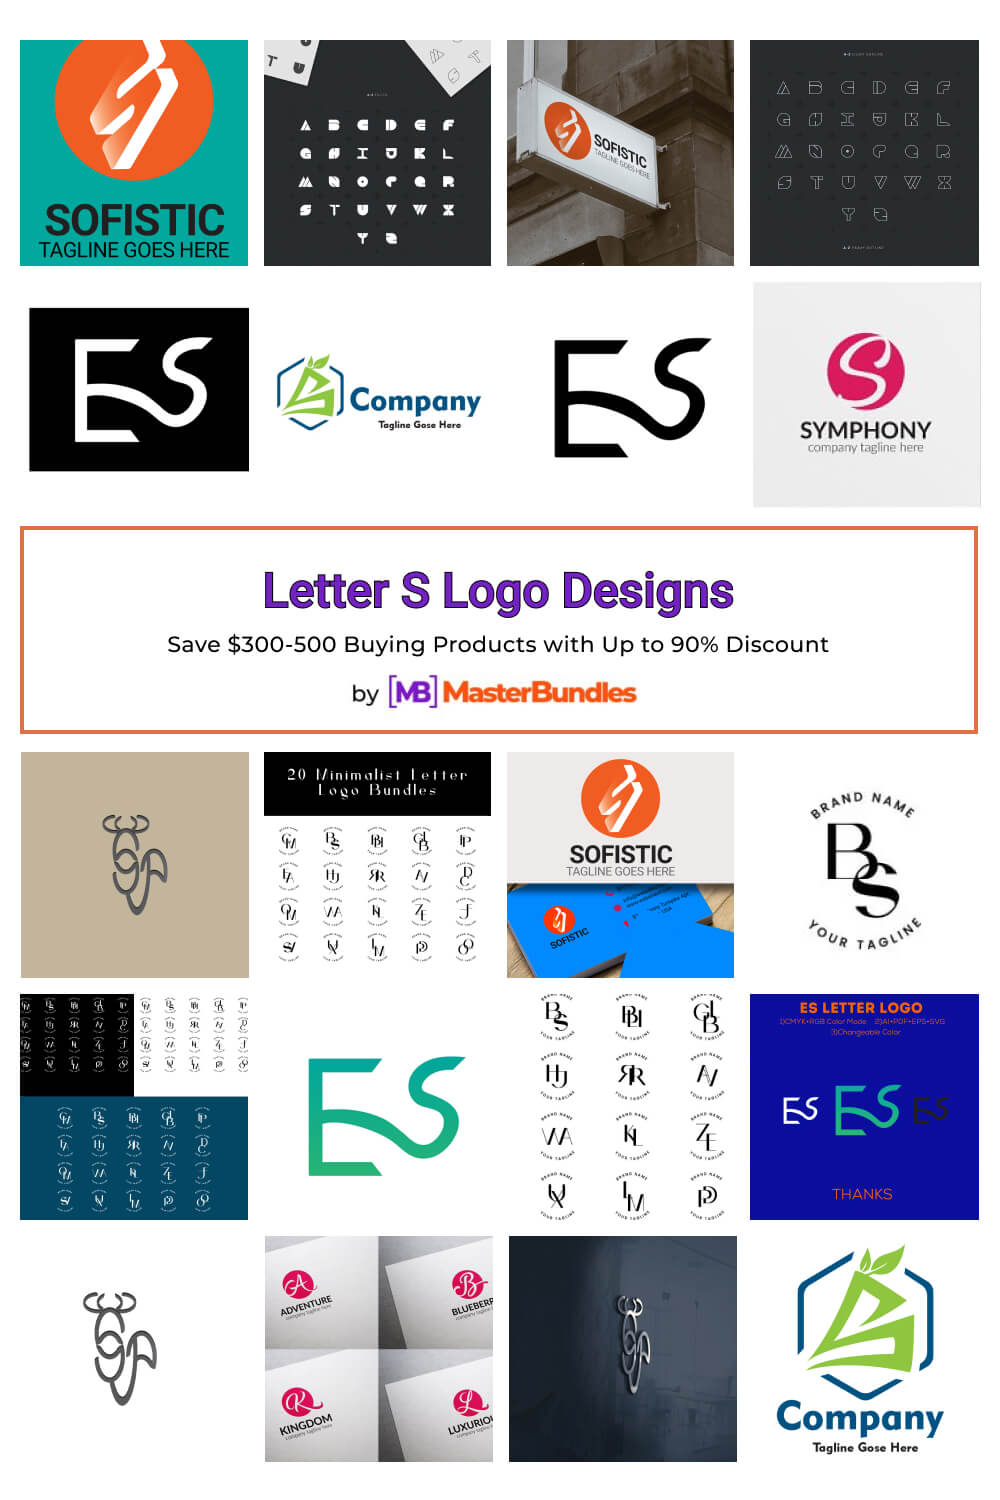 letter s logo designs pinterest image.